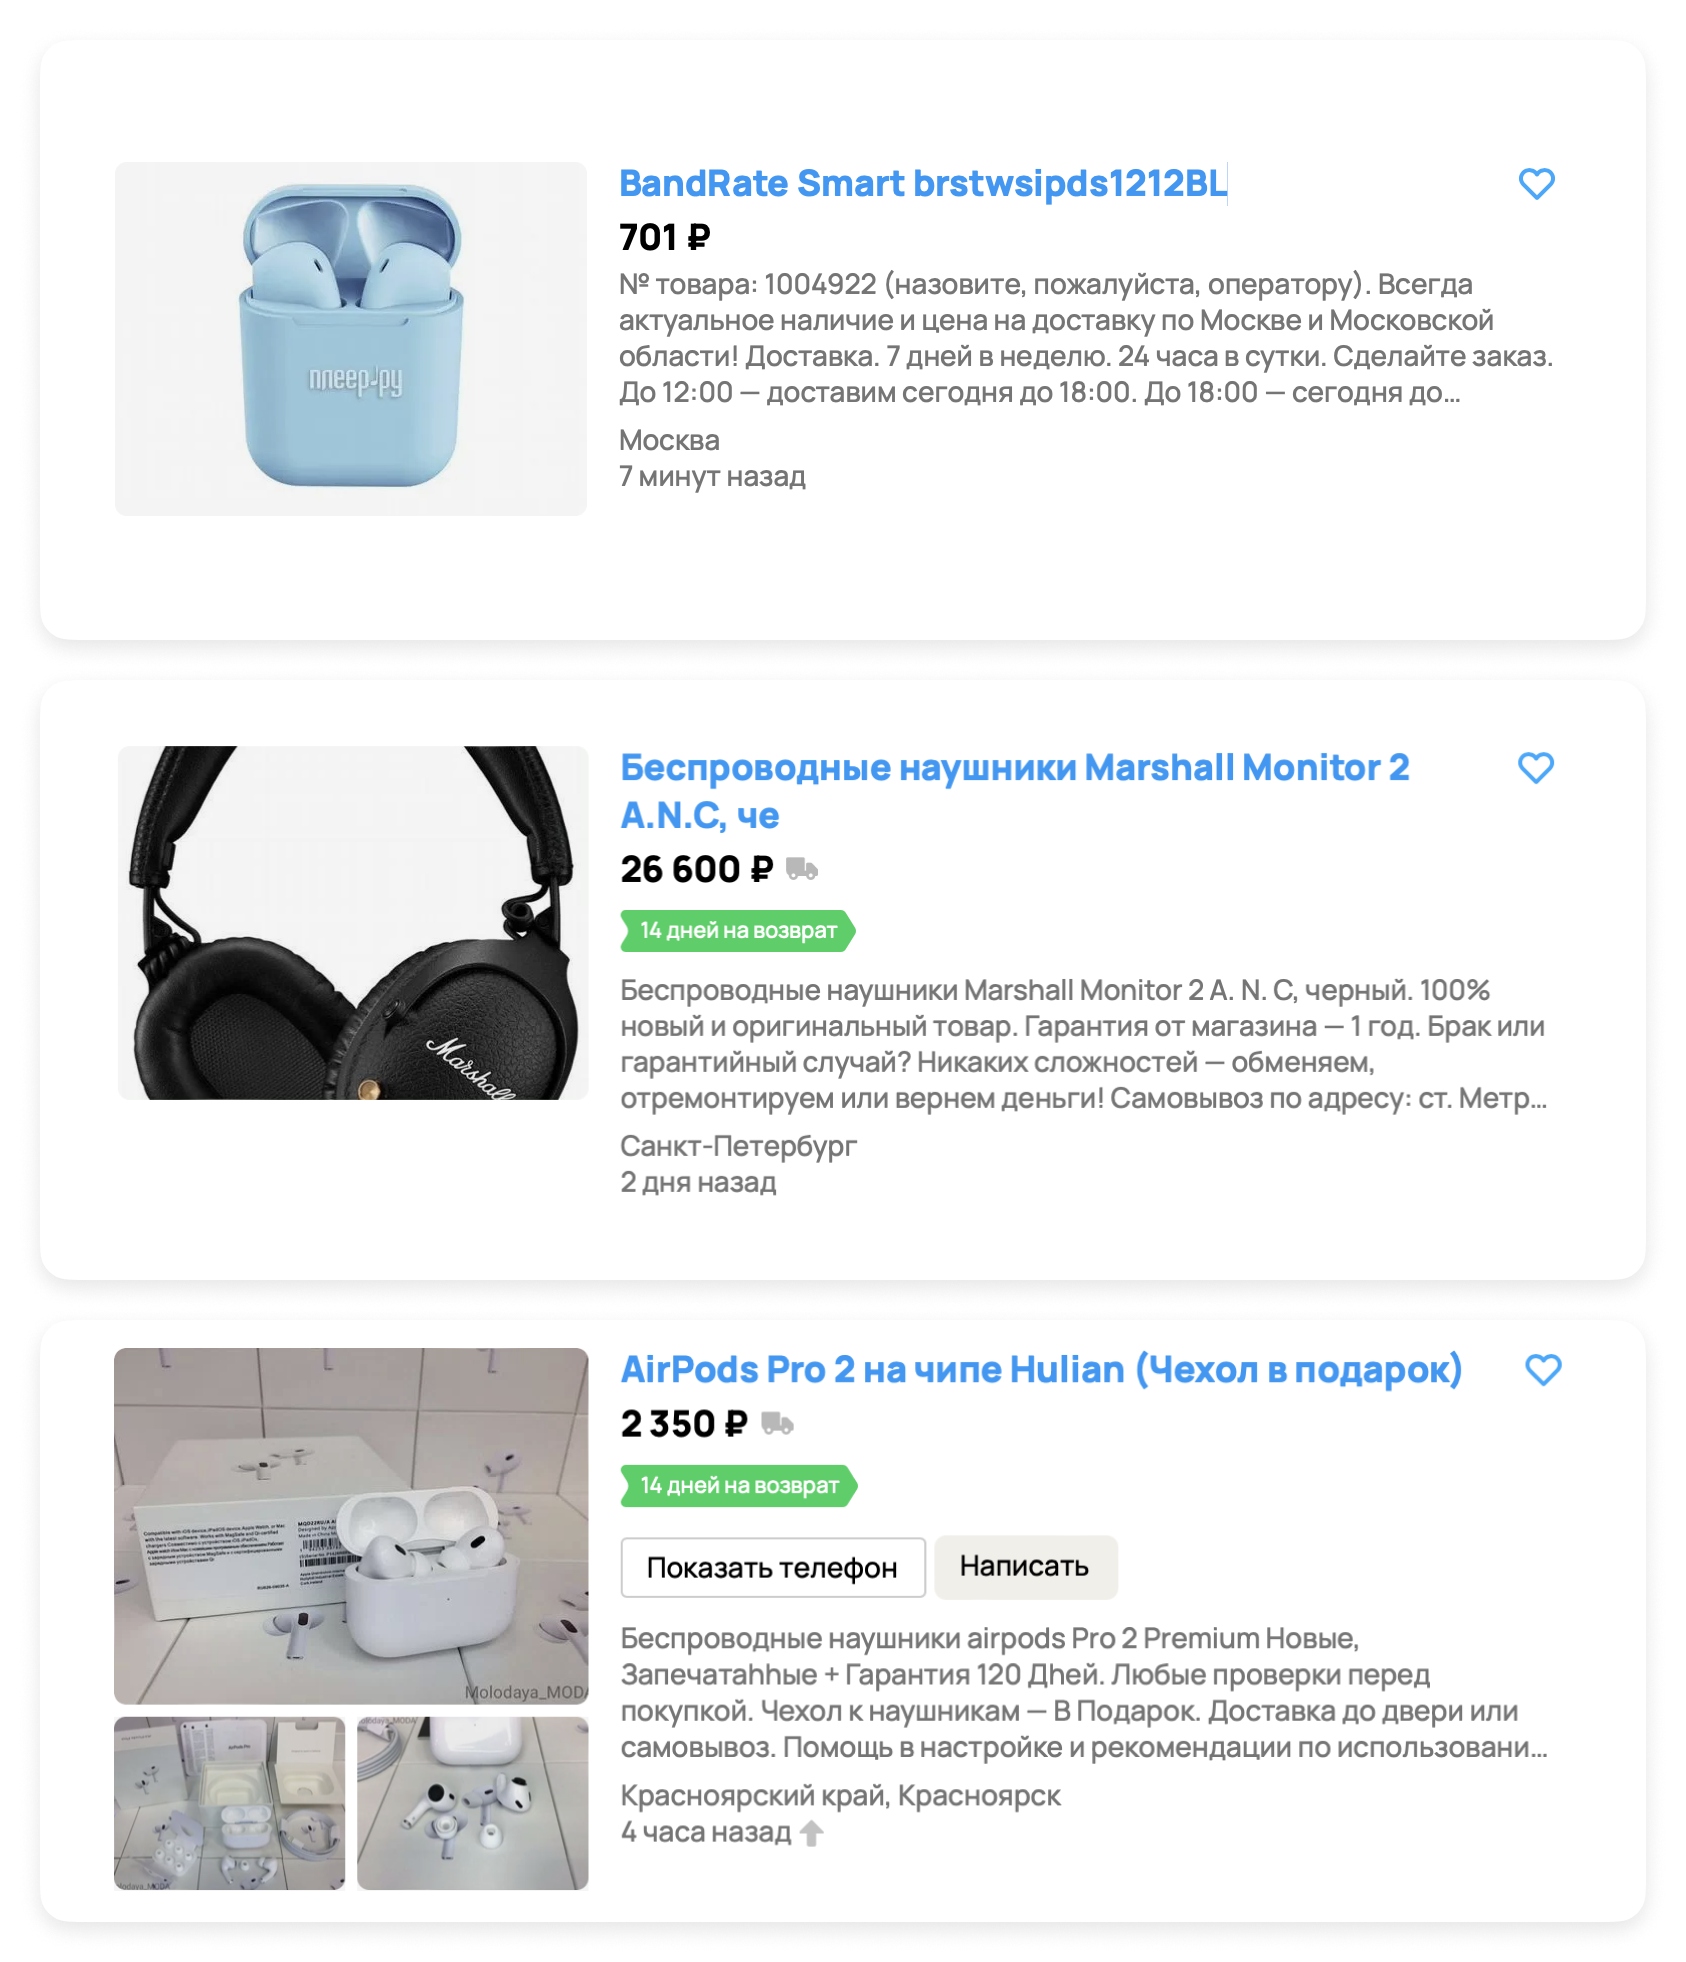 Скриншоты трех объявлений о продаже беспроводных наушников с разными ошибками в заголовках